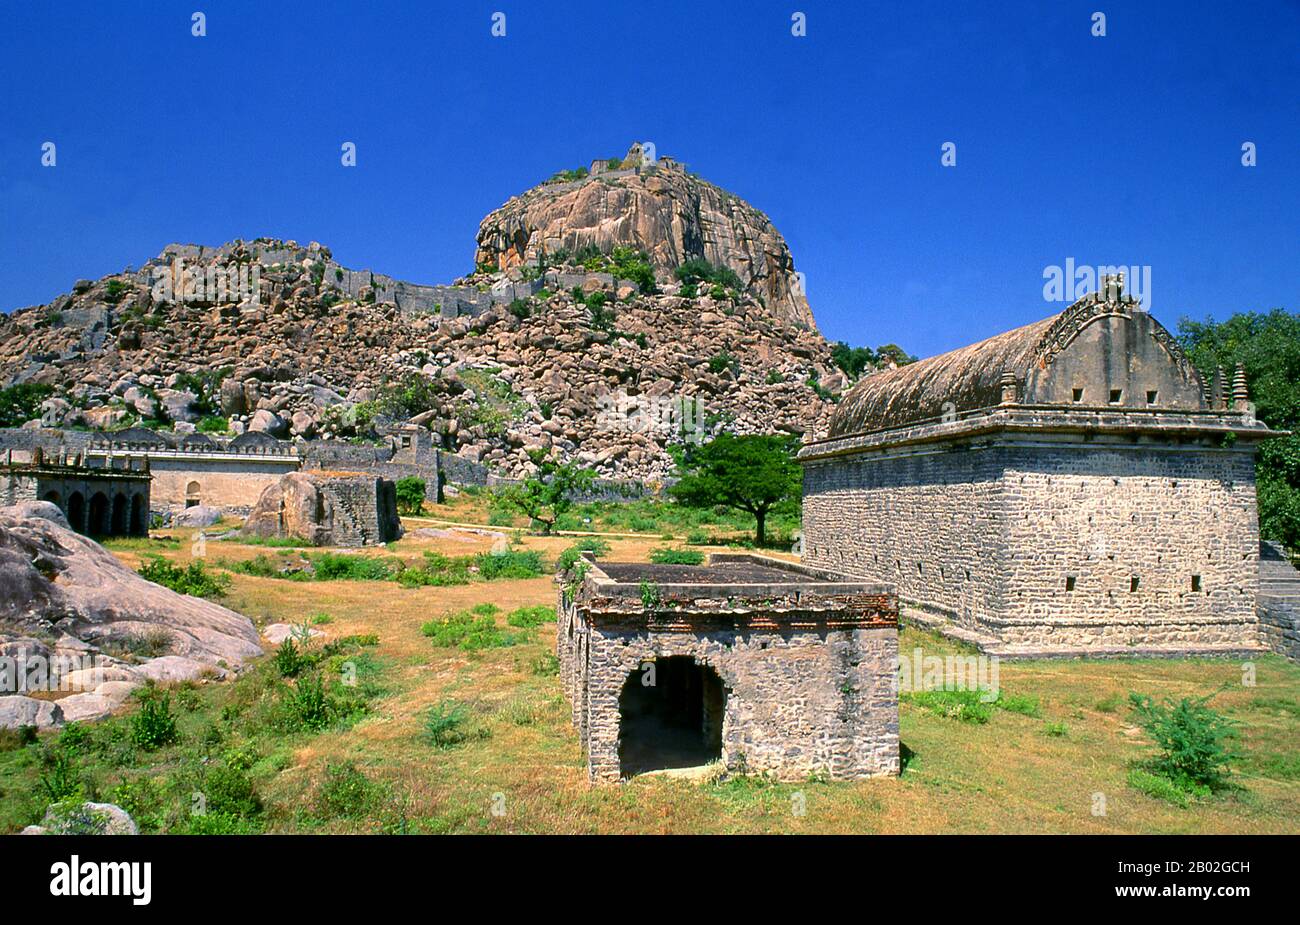 Inde: Fort Gingee, Tamil Nadu. Le fort de Gingee ou le fort de Senji in était à l'origine le site d'un petit fort construit par la dynastie Chola au cours du 9th siècle. Le fort a été modifié par Kurumbar au cours du 13th siècle. Le fort tel qu'il est aujourd'hui a été construit dans les 15th et 16th siècles par la dynastie Nayak. Le fort passa de manière variable aux Marathas sous la direction de Shivaji en 1677, les Bijapur sultans, les Moghuls, les Nawabs de Carnatic, les Français et ensuite les Britanniques en 1761. Le fort est étroitement associé à Raja Tej Singh. Banque D'Images